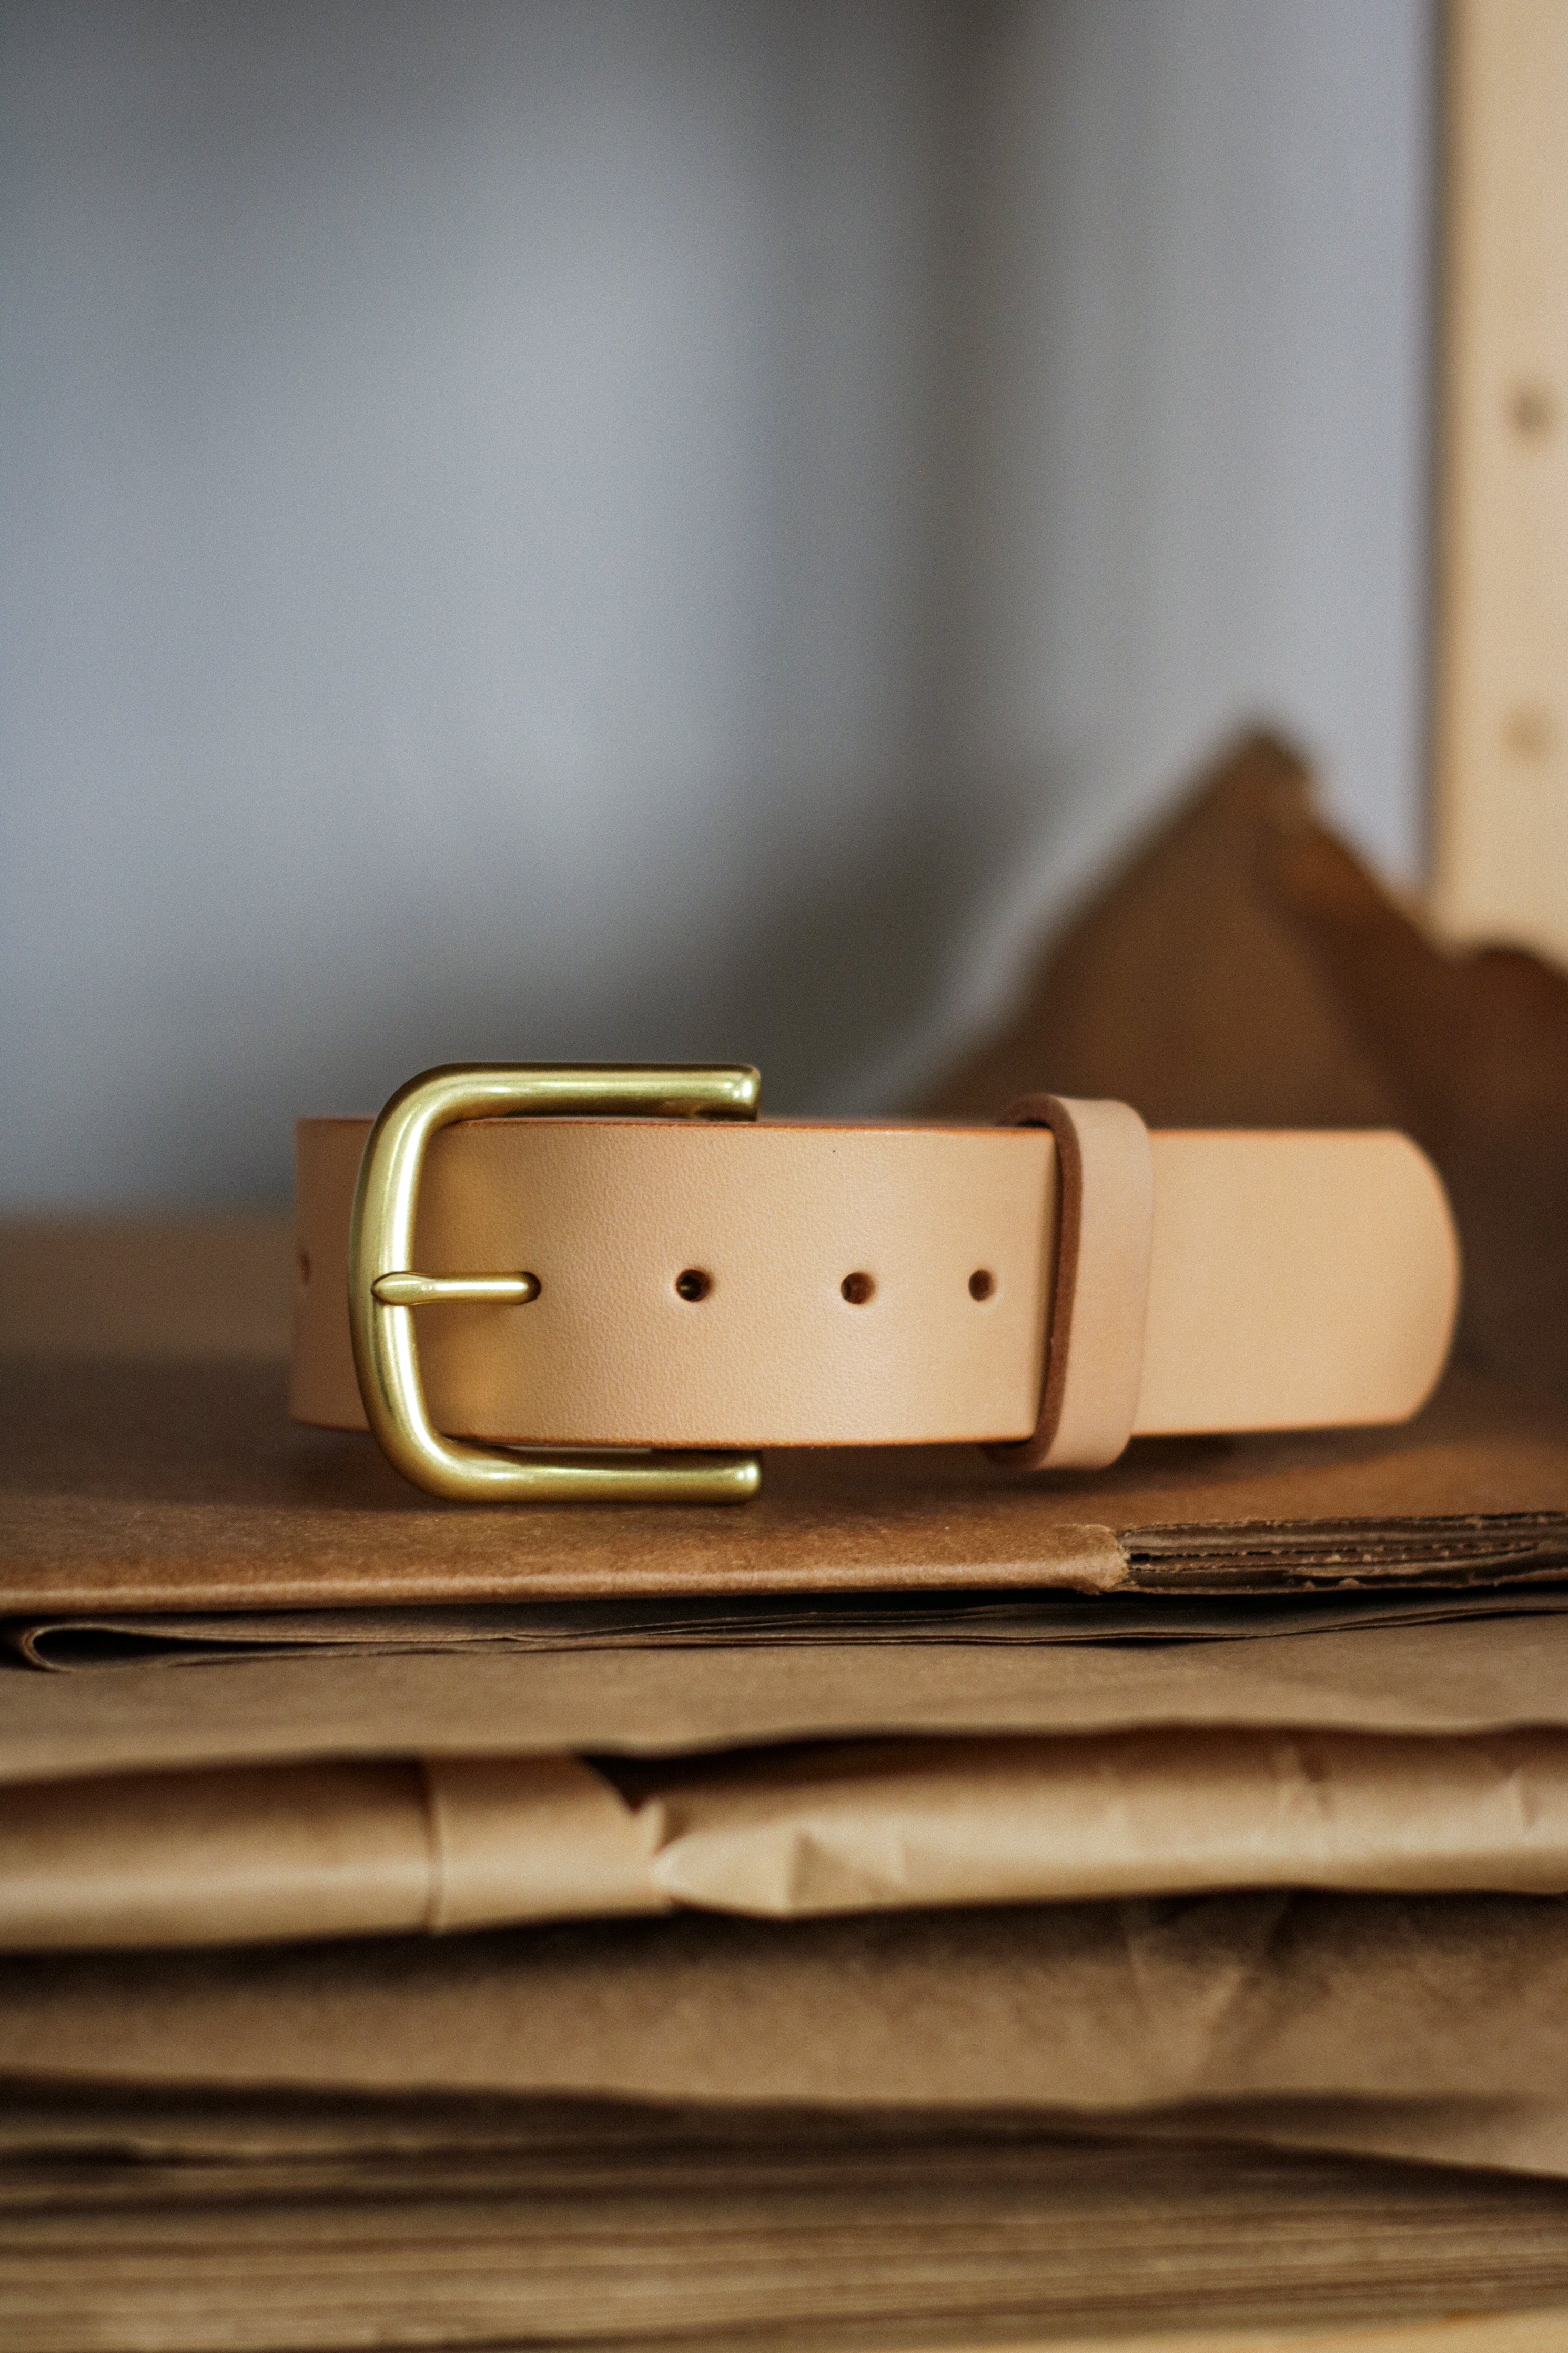 Leather Belt-Standard Natural vegetable-tanned leather belt, 1 1/2